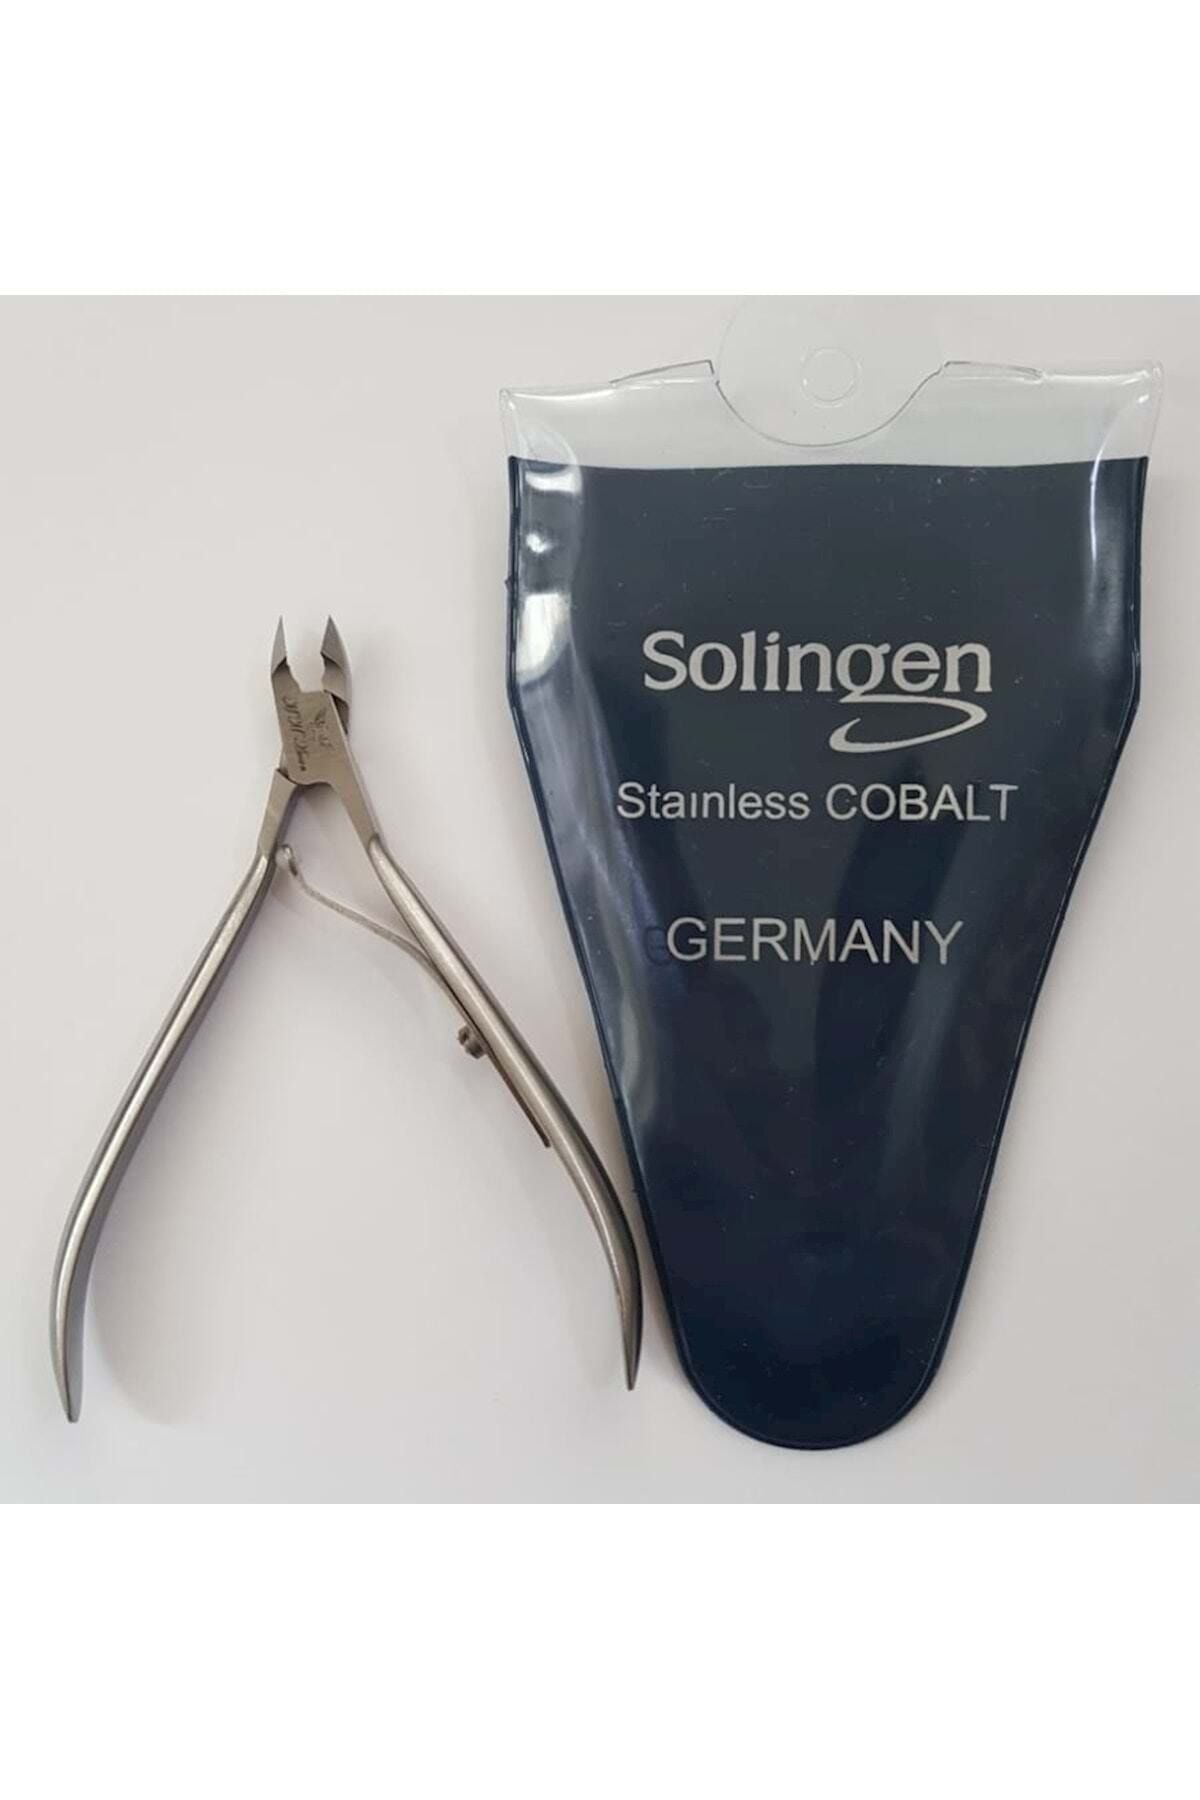 Solingen Et Pensi Cobalt Germany 5 mm